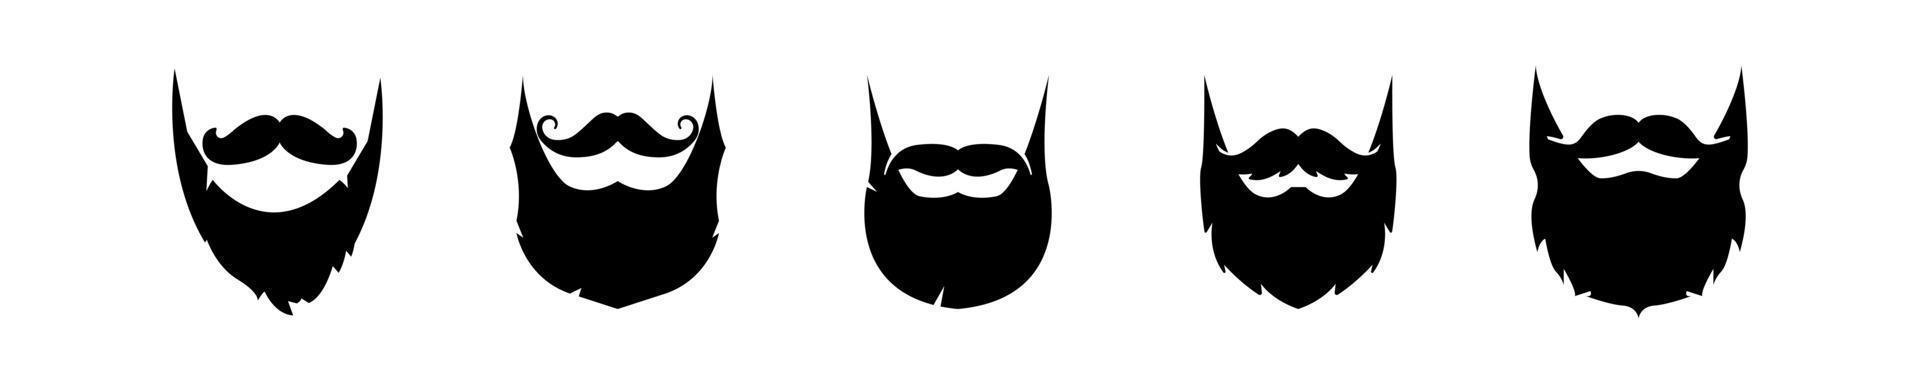 gentelman met baard logo. vector illustratie